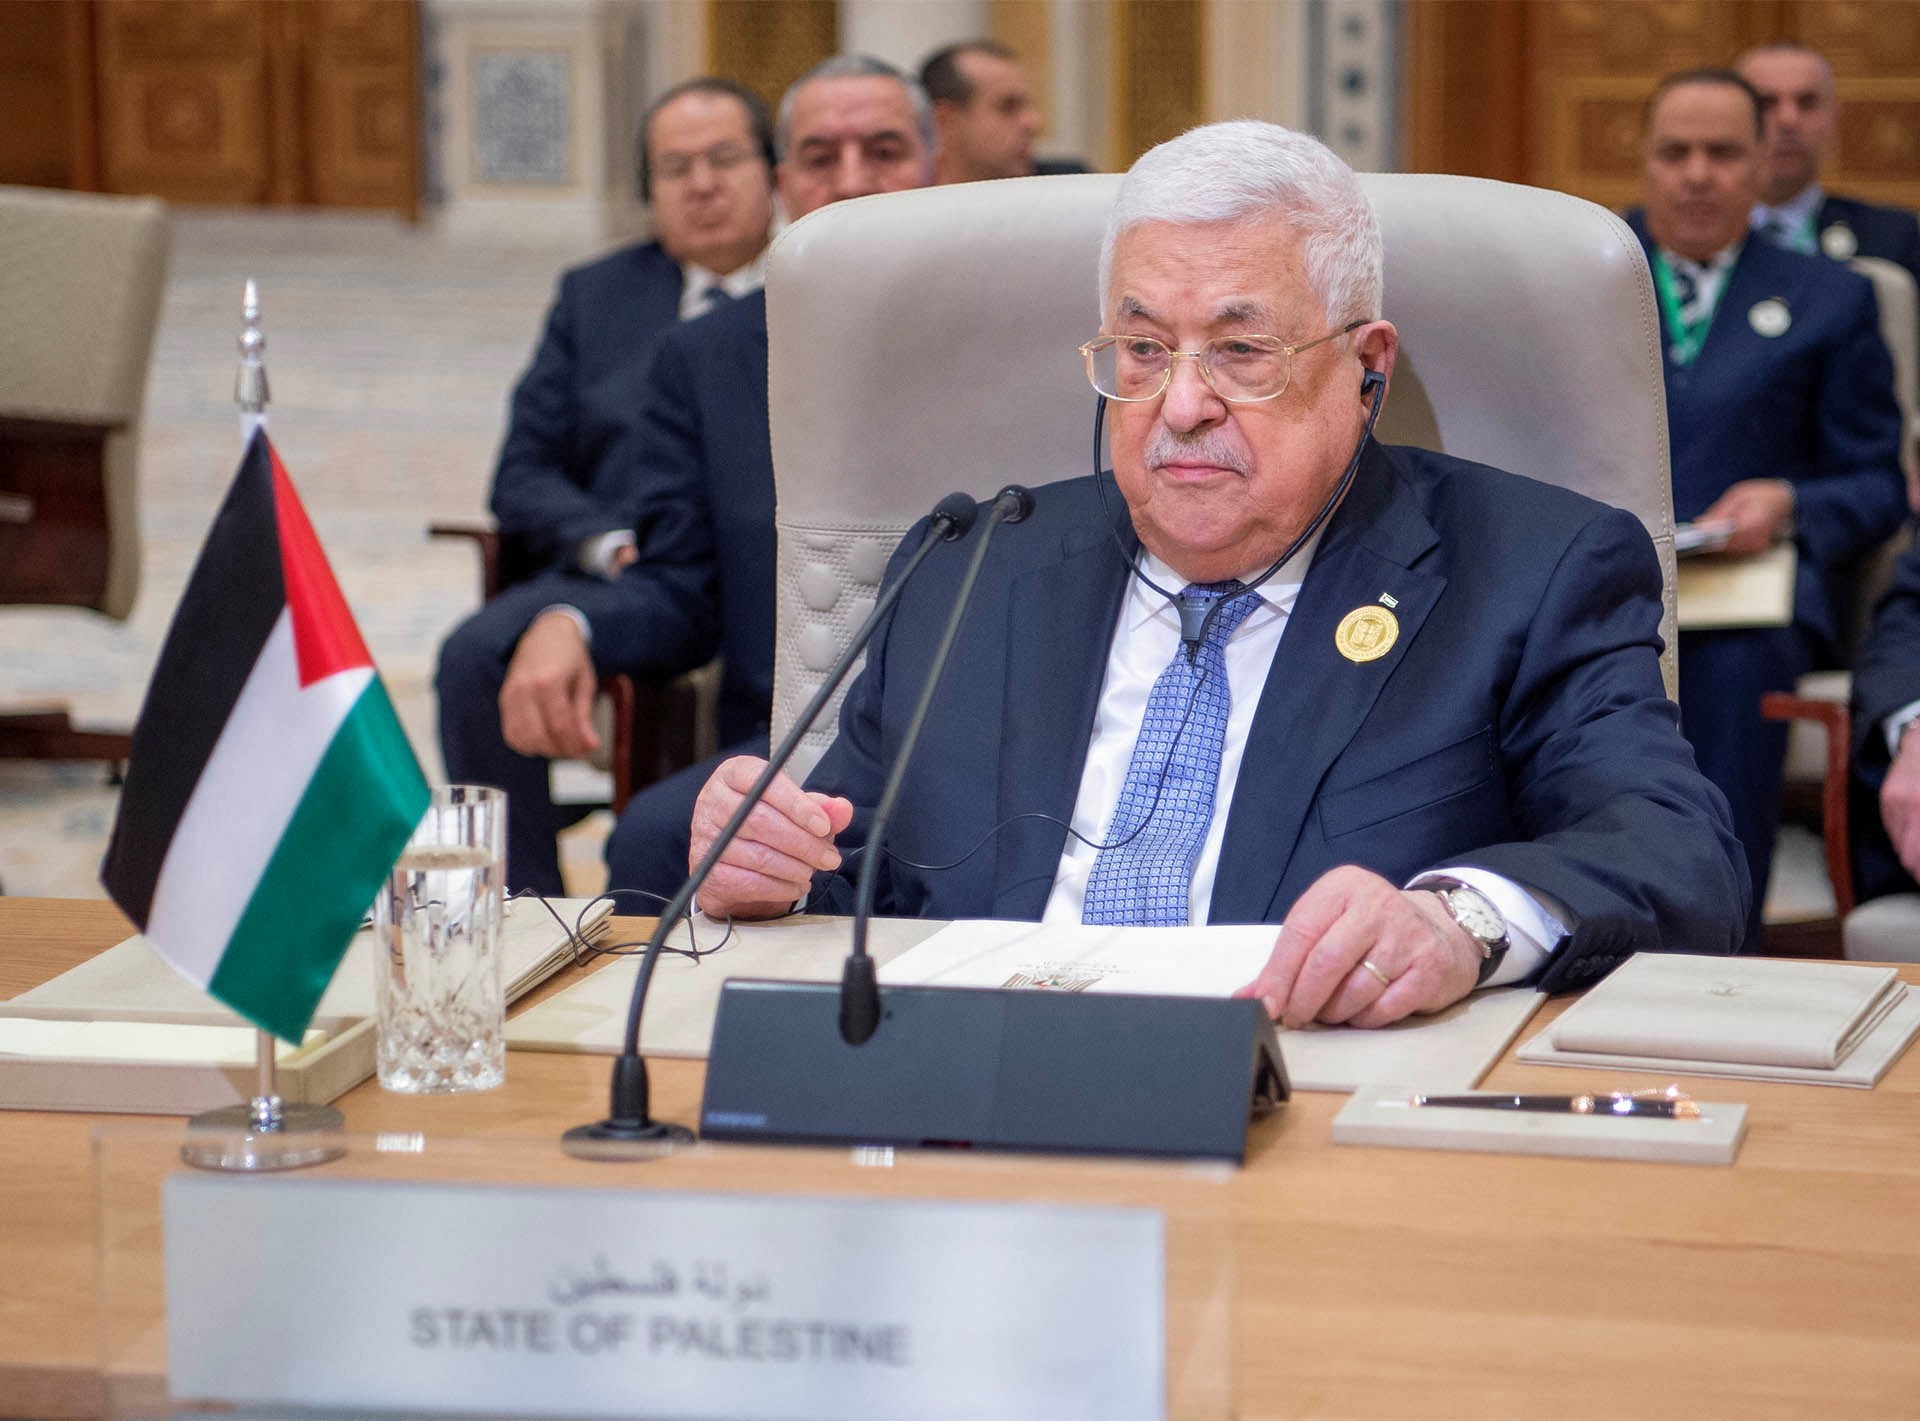 عباس الفلسطيني في السعودية لحضور اجتماعات الملك سلمان ومحمد بن سلمان |  أخبار الصراع الإسرائيلي الفلسطيني